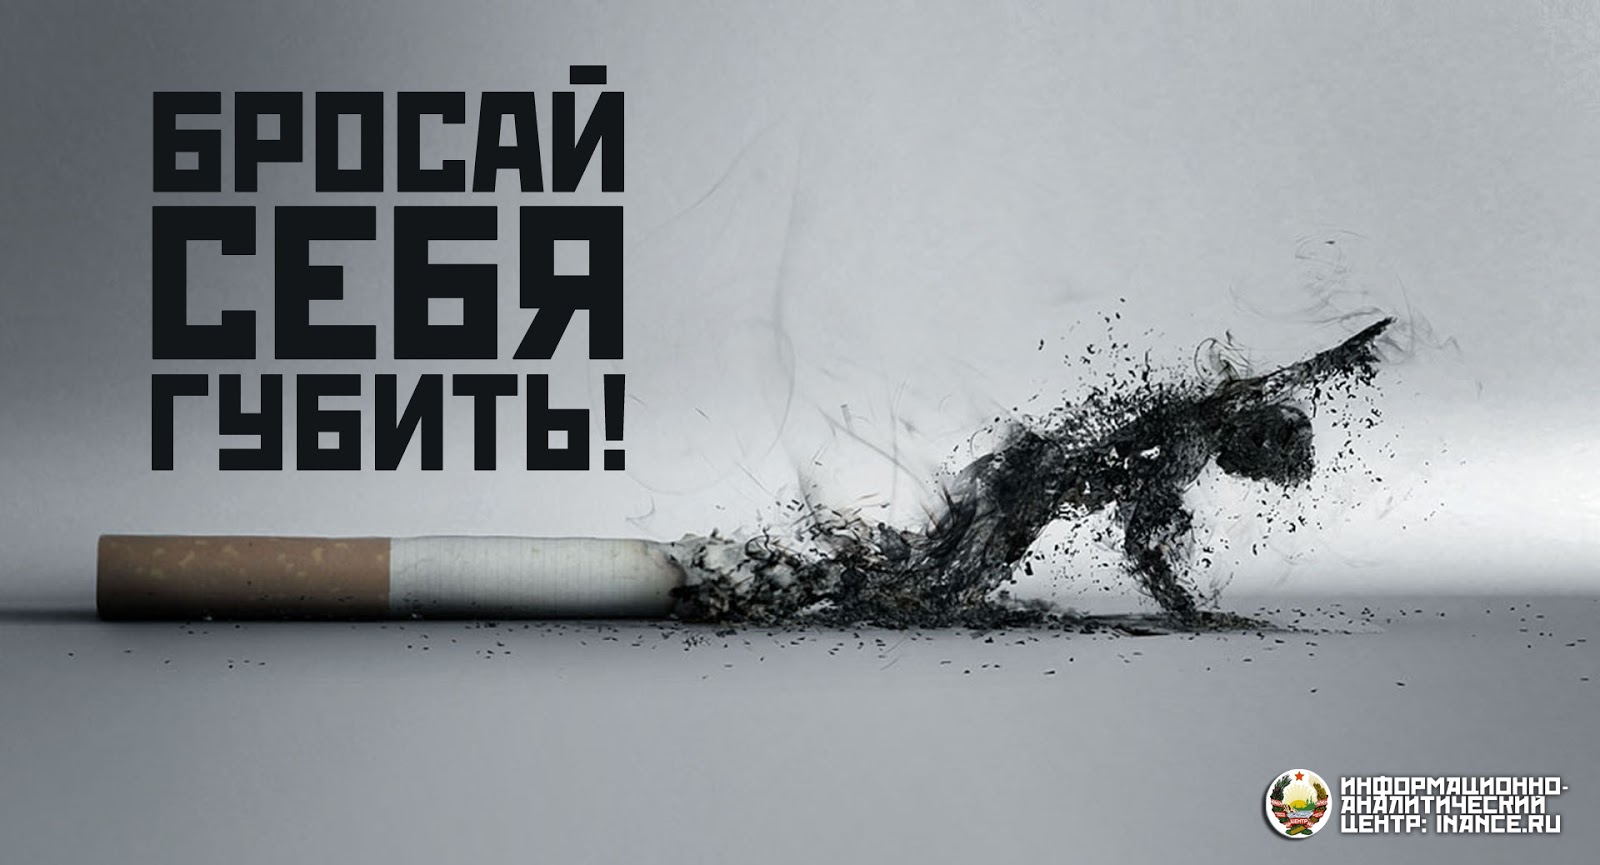 Тема против курения. Против курения. Плакат против курения. Против сигарет. Баннер против курения.